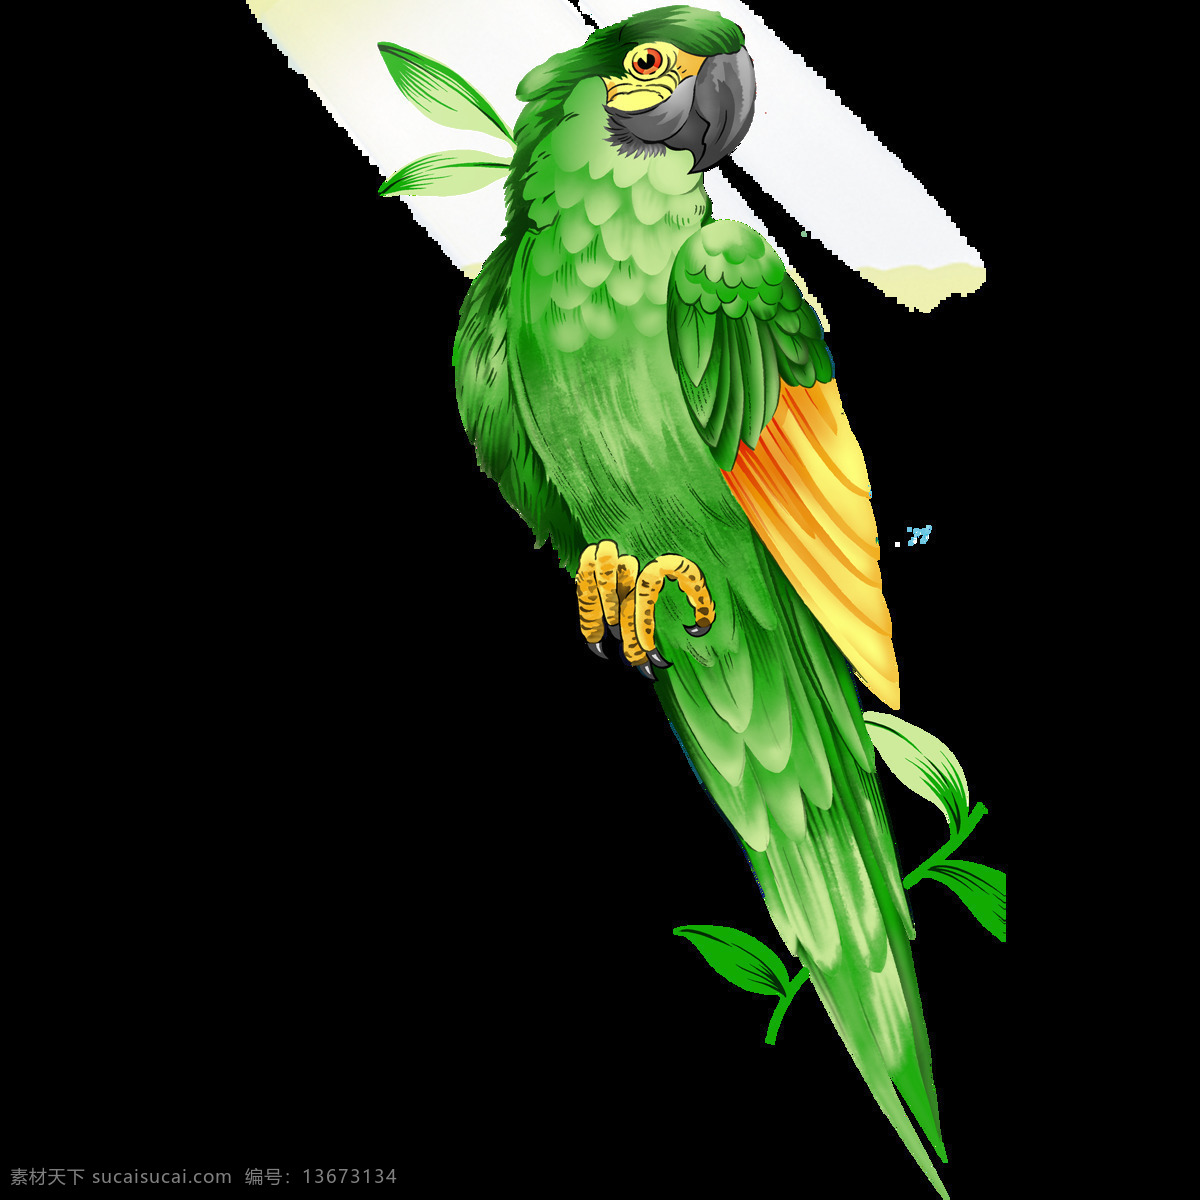 唯美 绿色 鸟儿 绘画 美观 鲜明 逼真 绿色鹦鹉 活泼